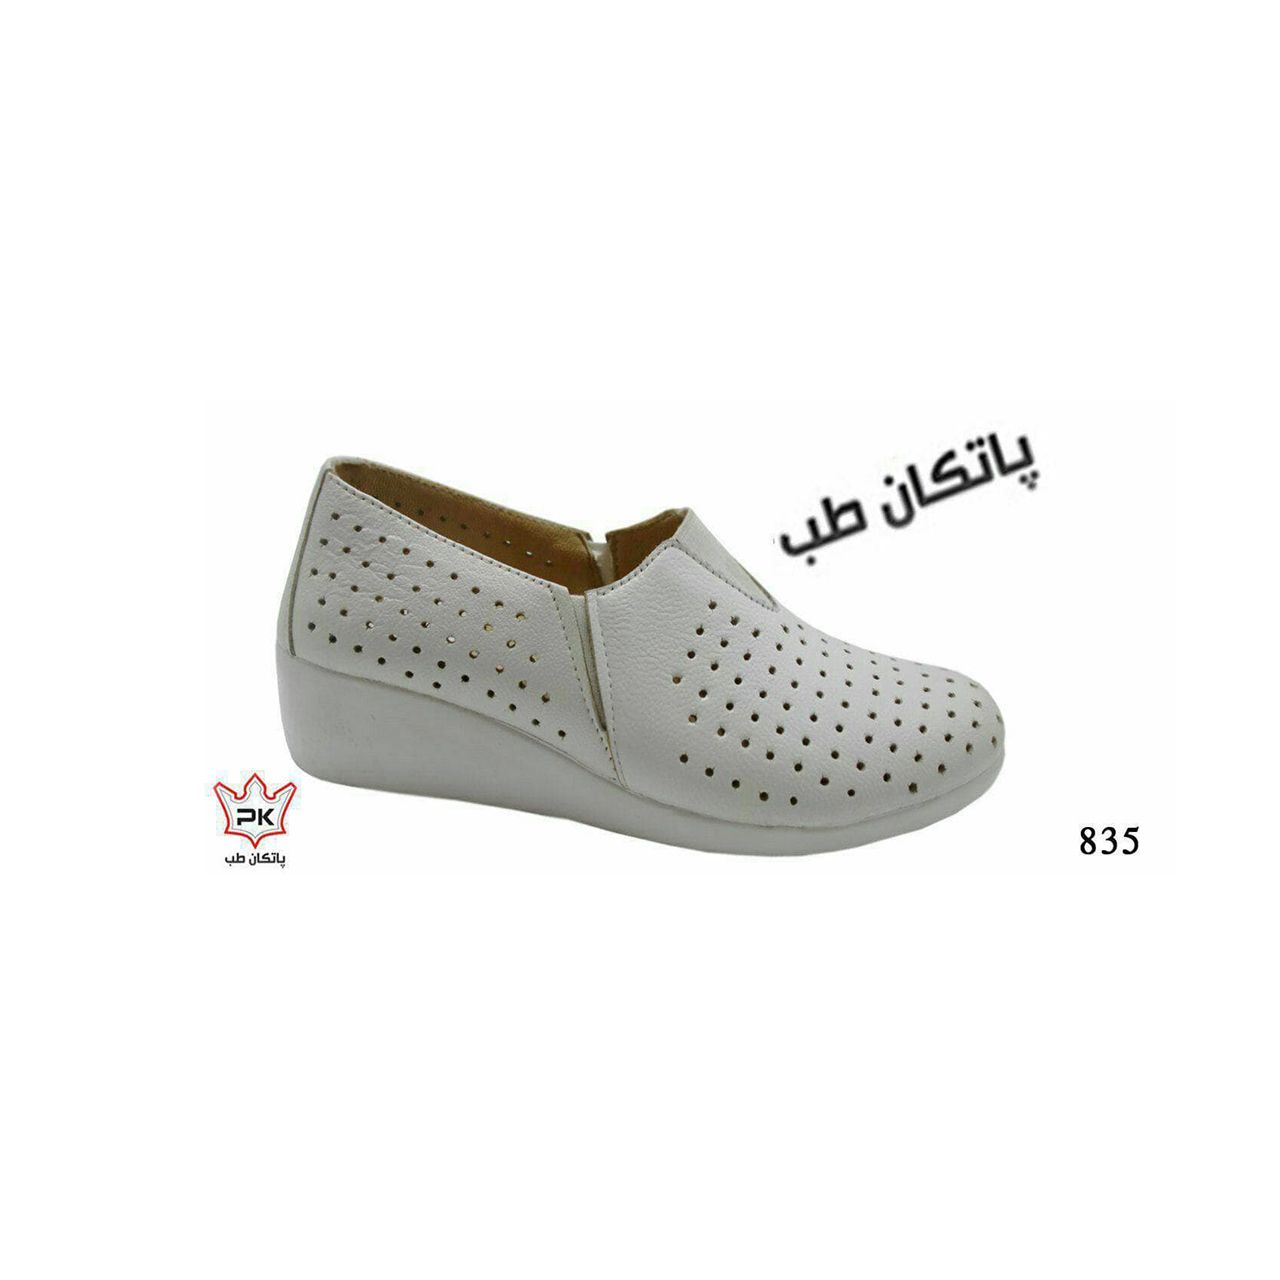 کفش طبی زنانه پاتکان کد ARZ 835S -  - 4